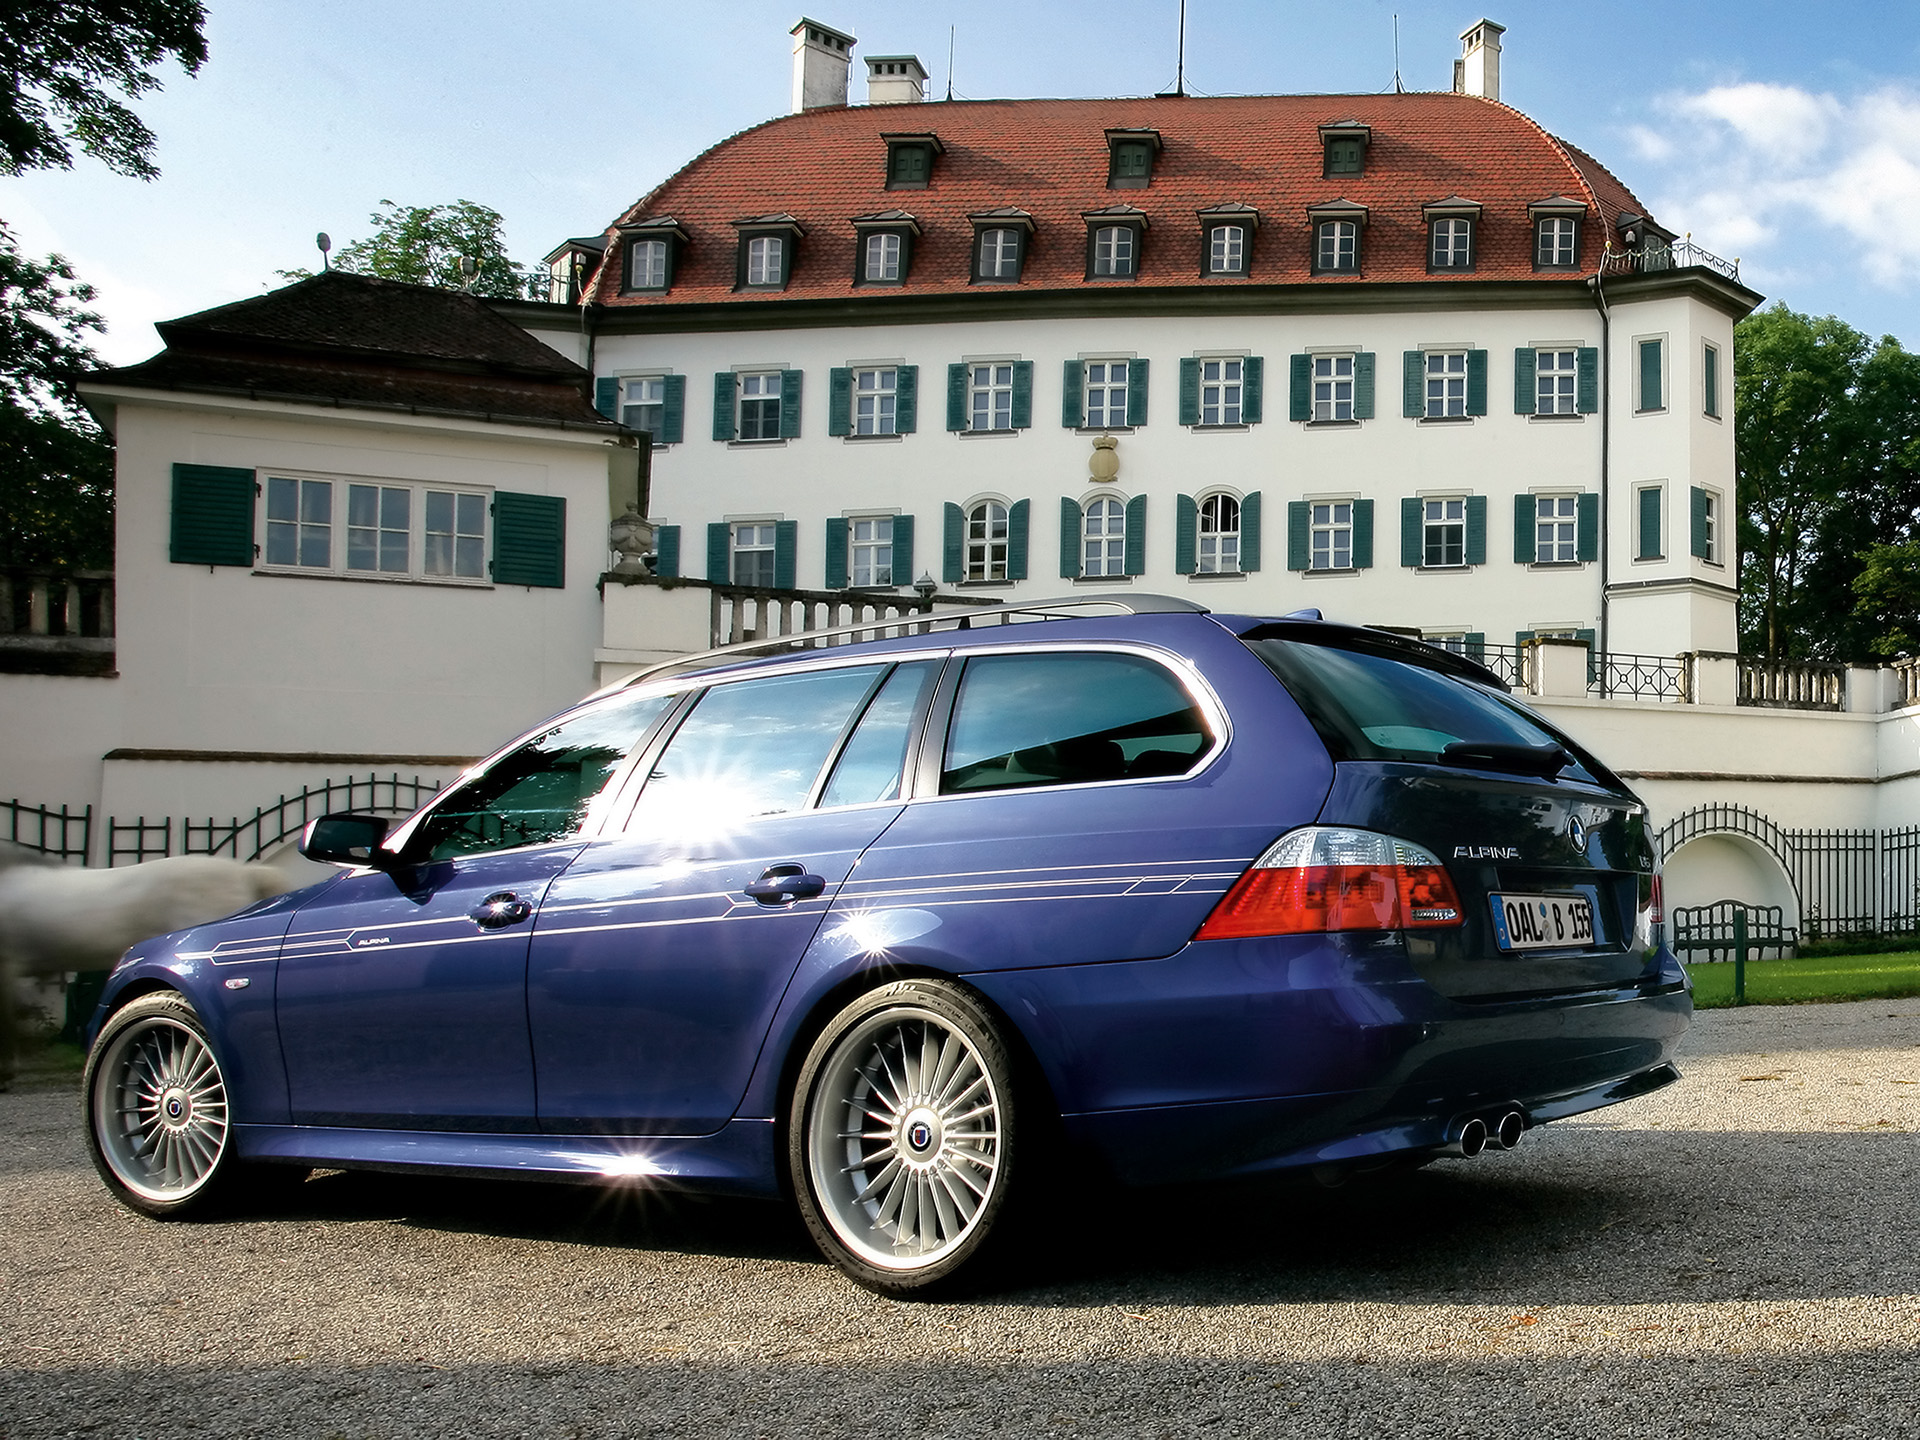 BMW Alpina